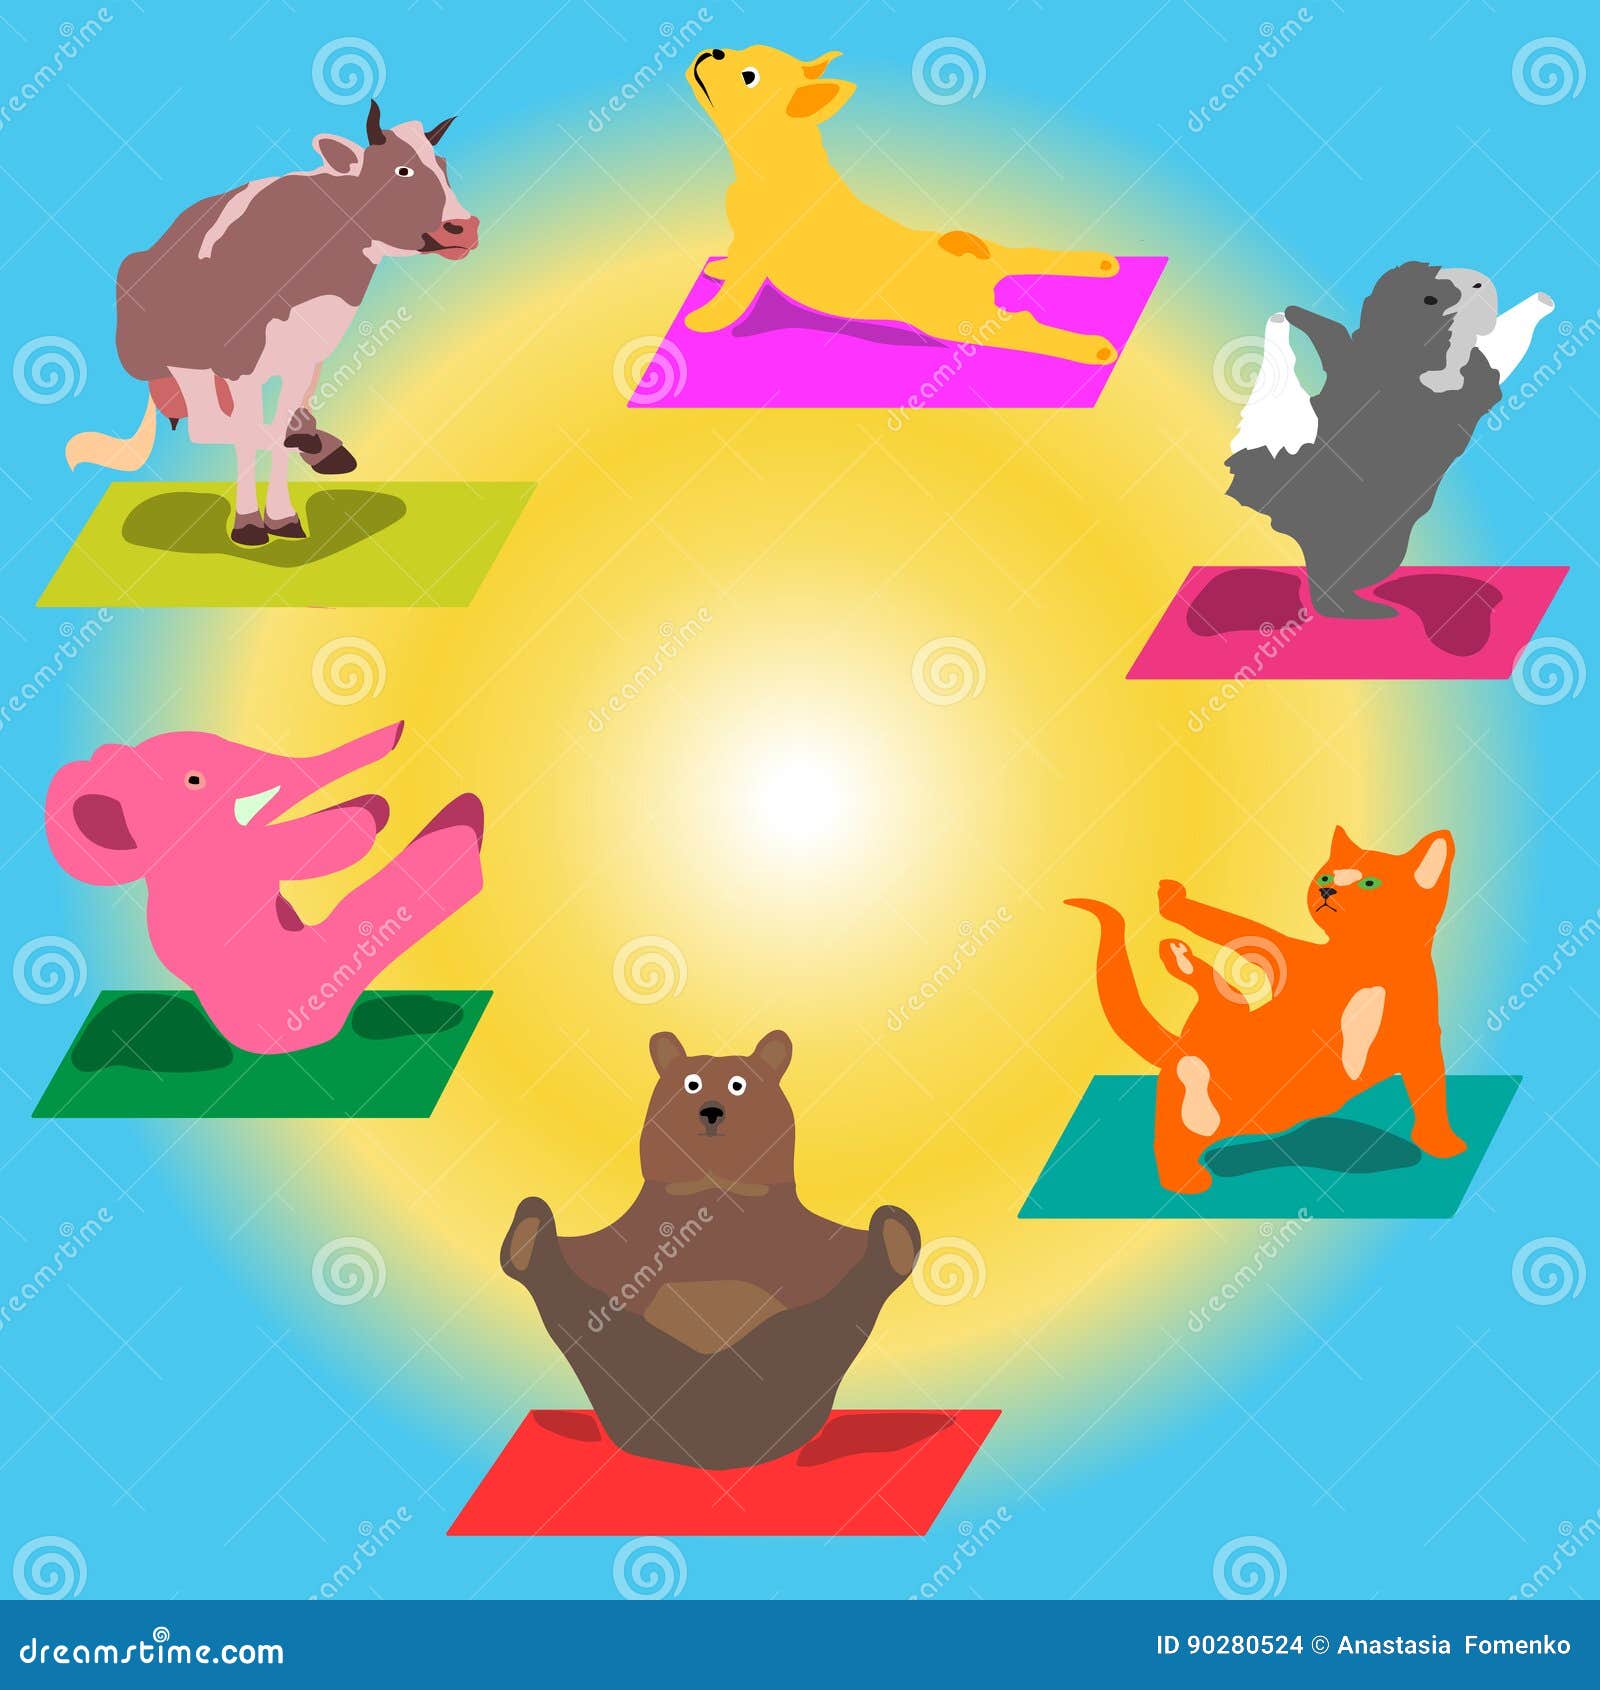 Animal Yoga Poses